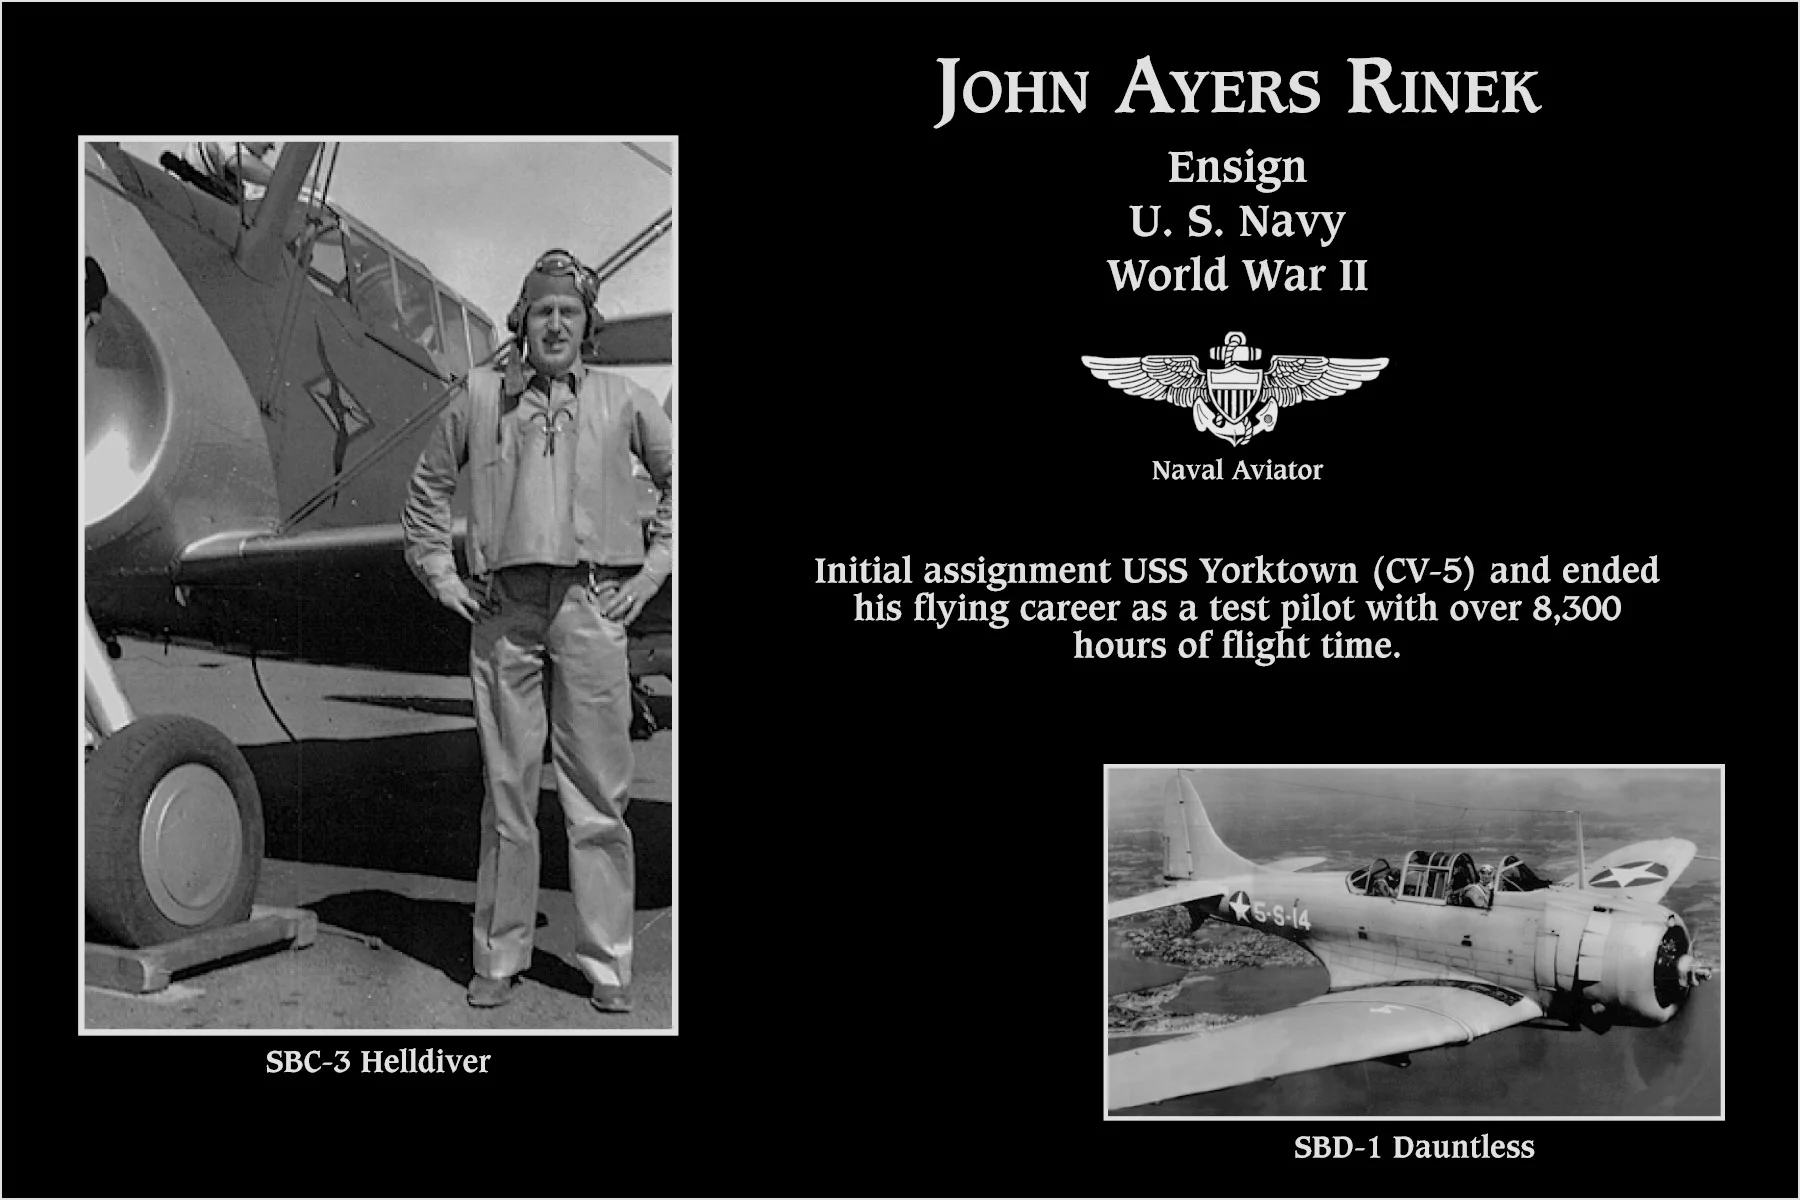 John Ayers Rinek